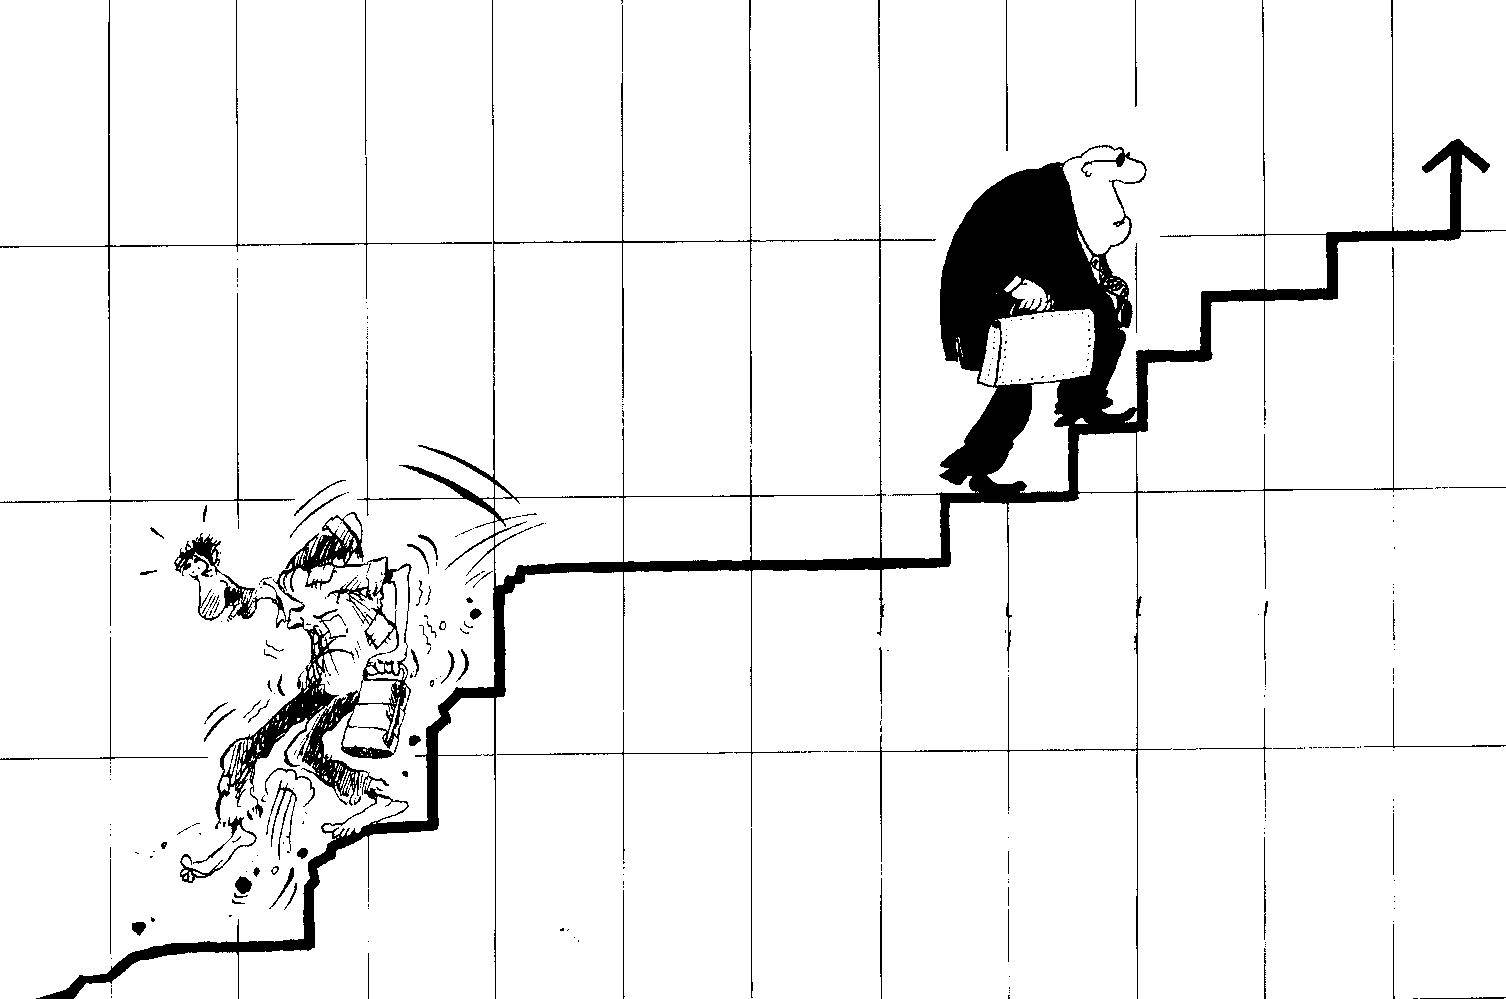 Vignetta l'economia liberista penalizza il povero ed arricchisce il ricco